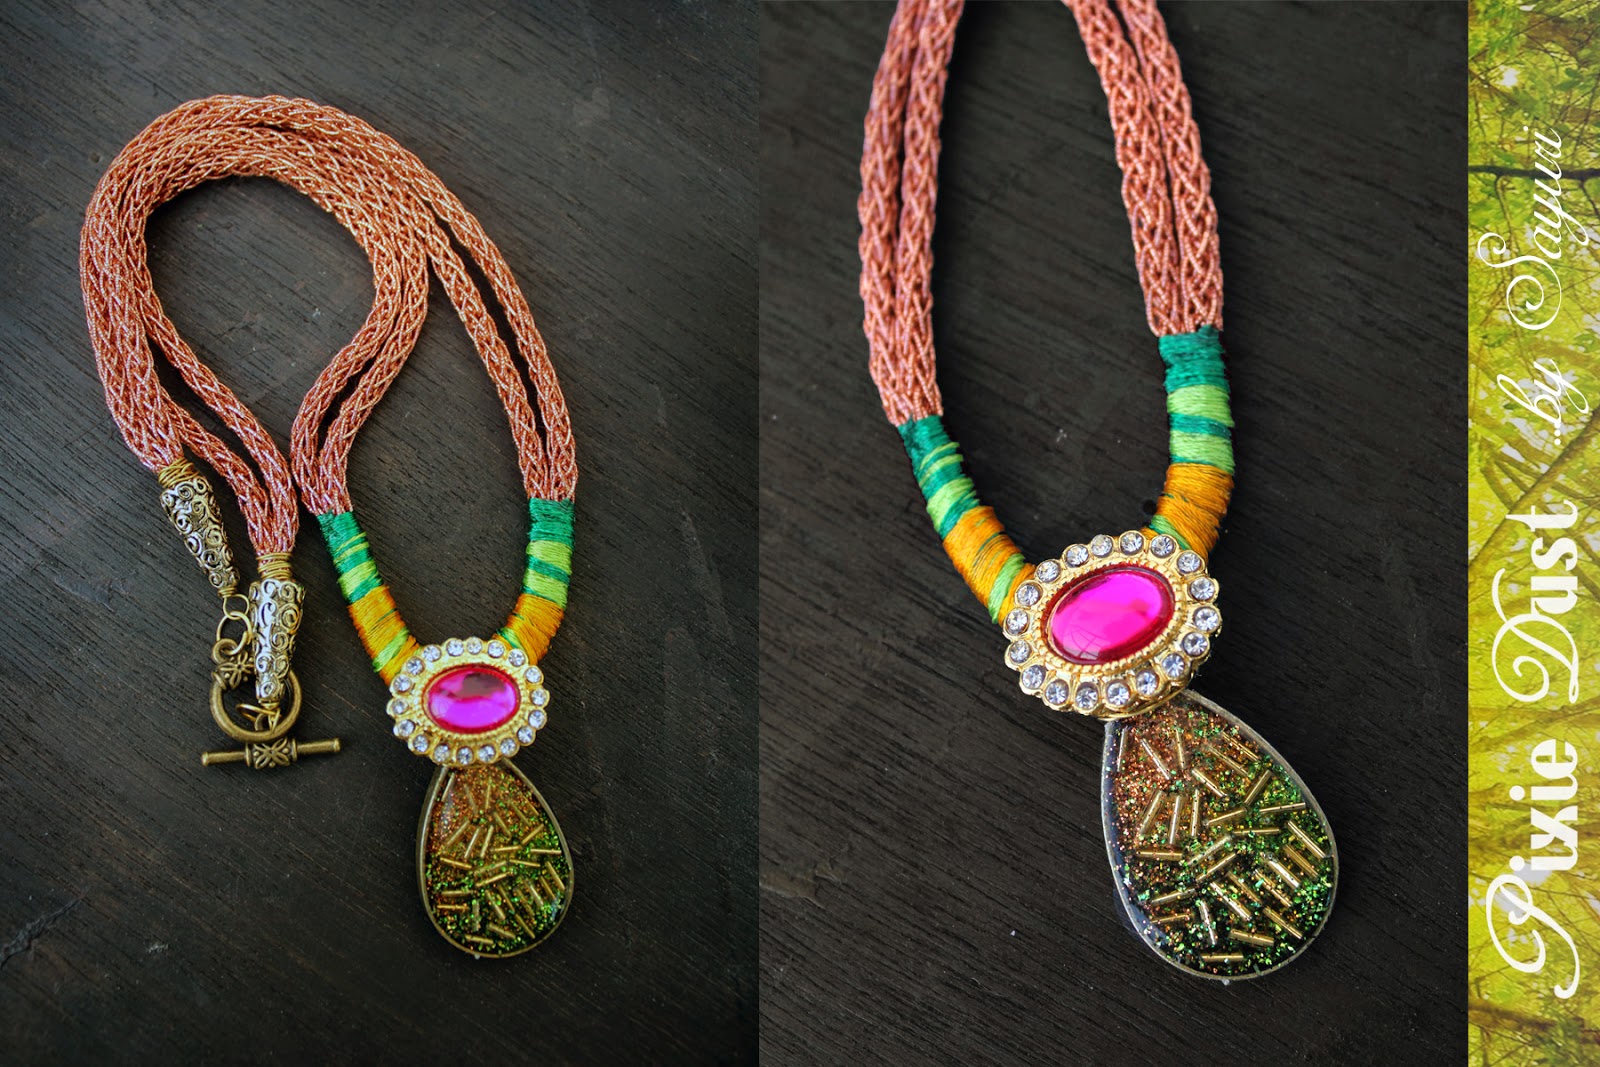 Pixie Dust - Bohemian Jewelry by sayuri